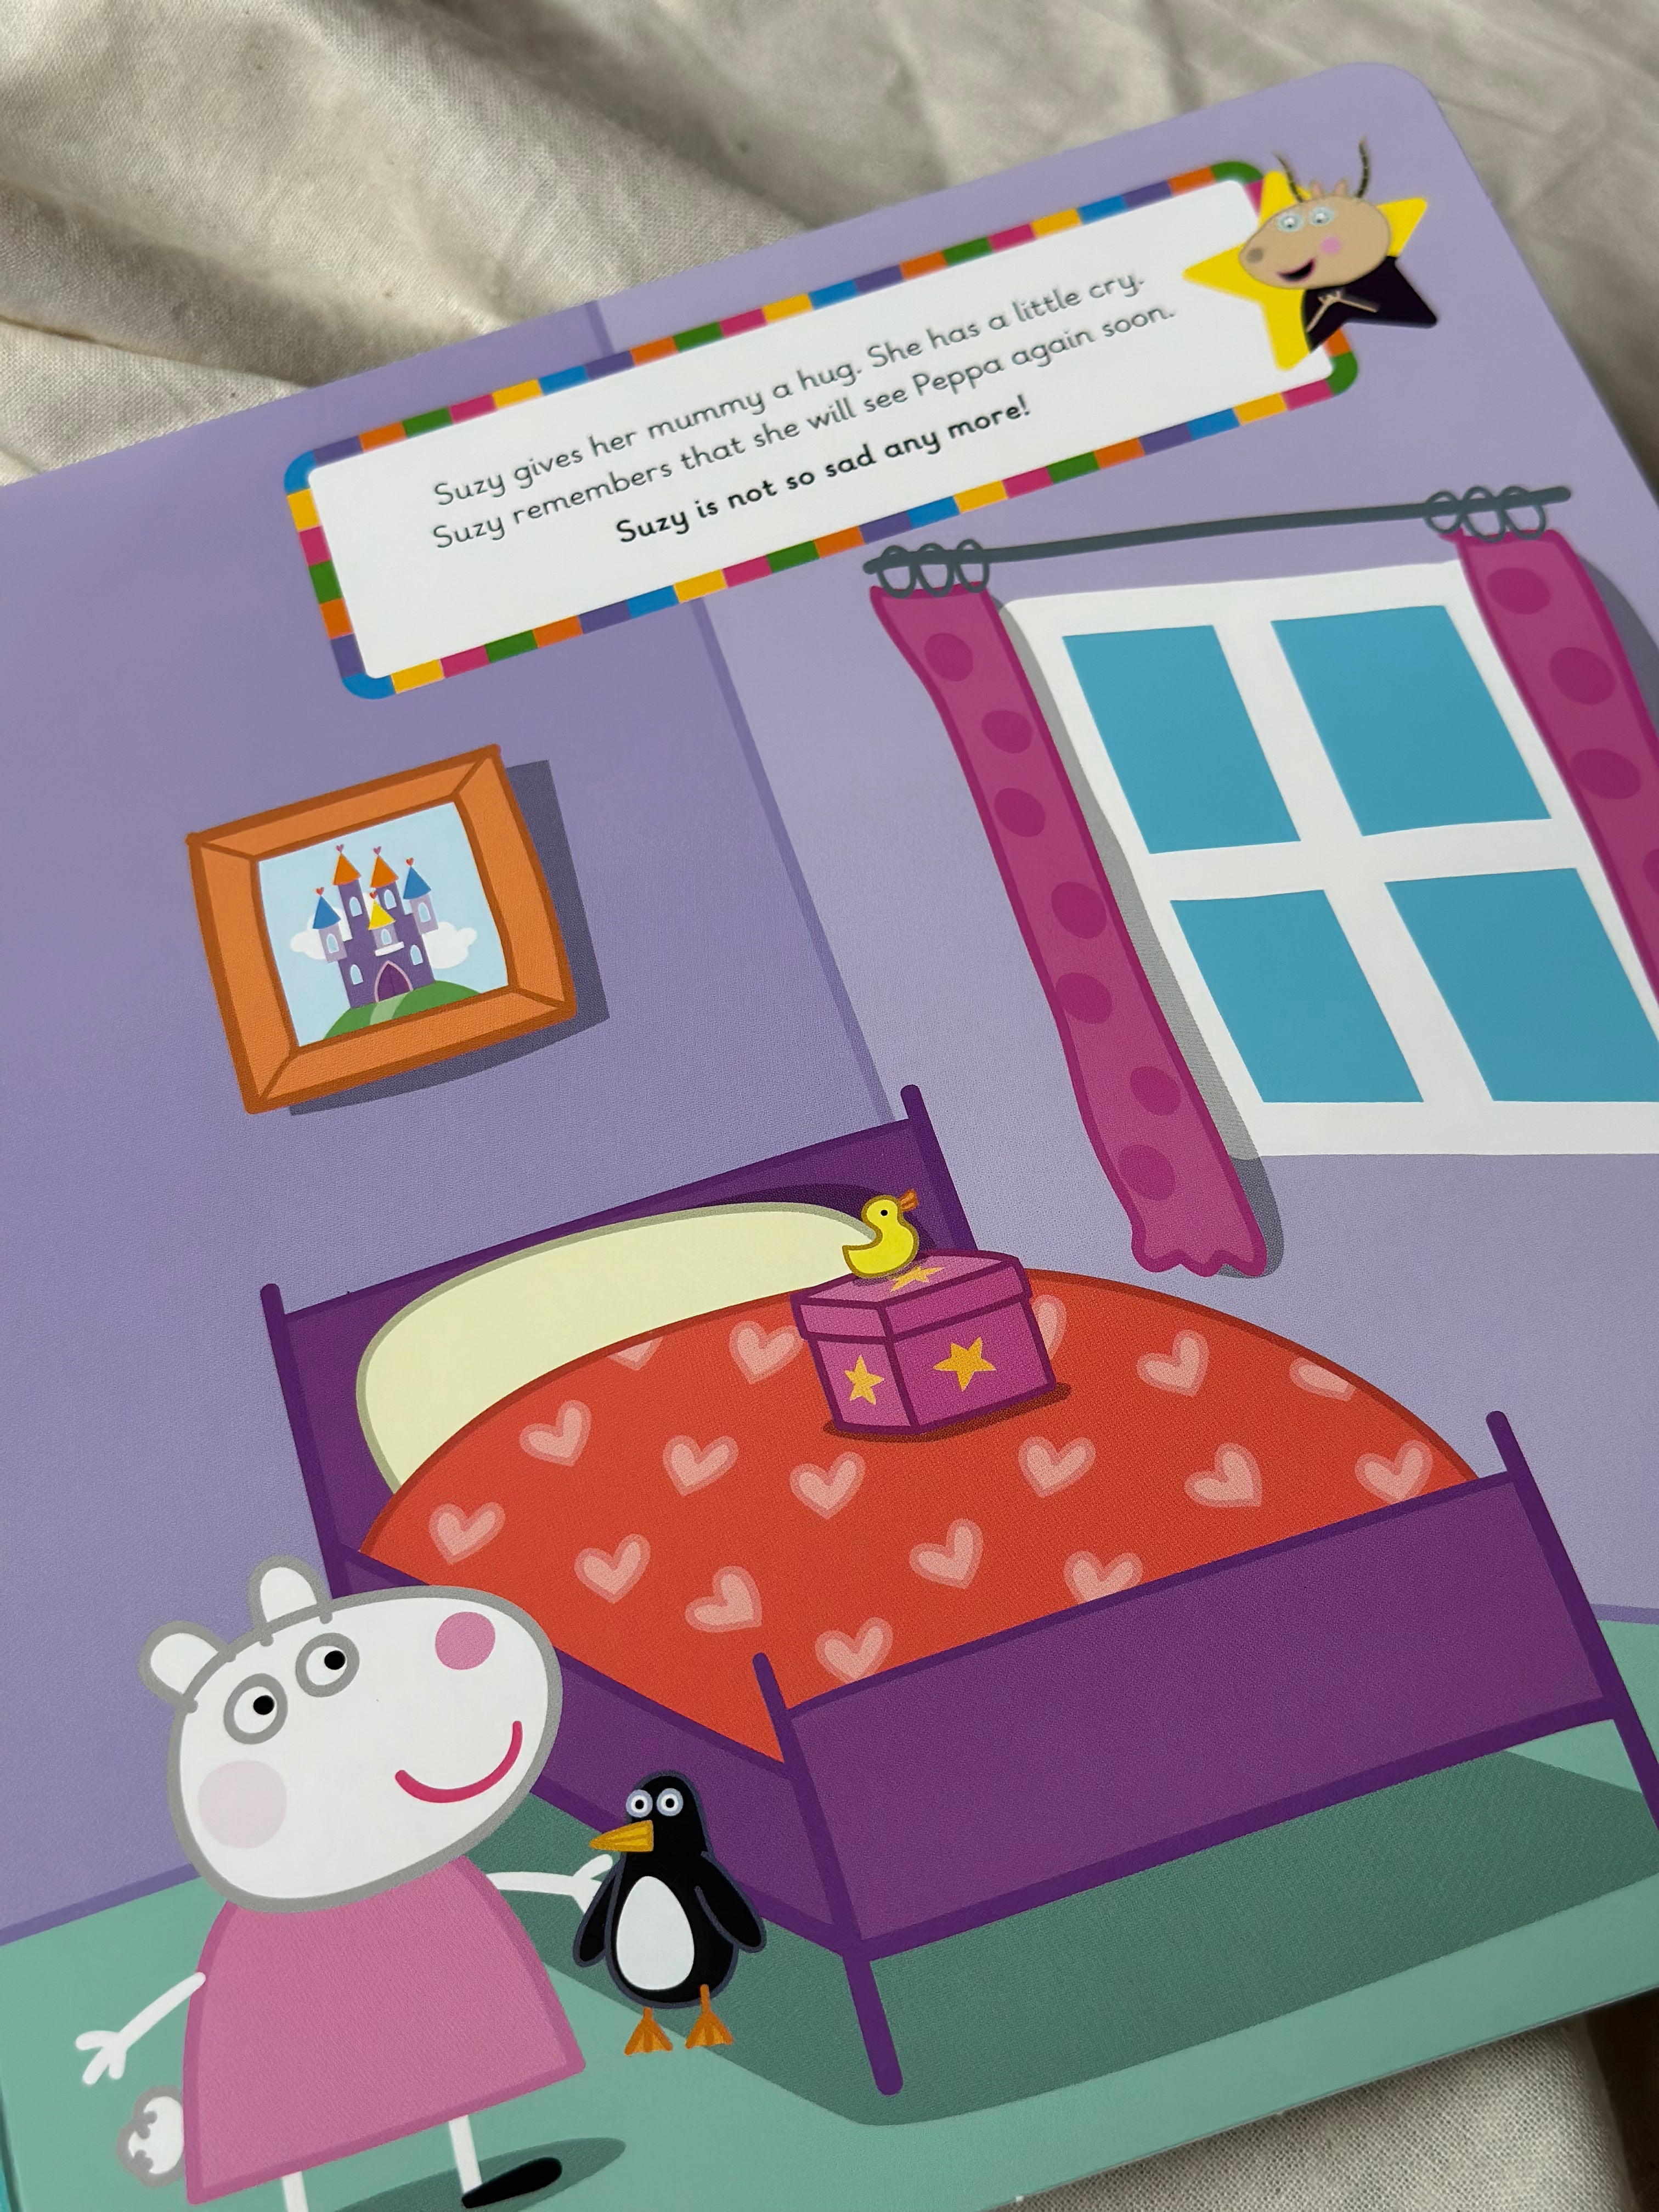 Learn with Peppa: Peppa's Big Feelings [Book]